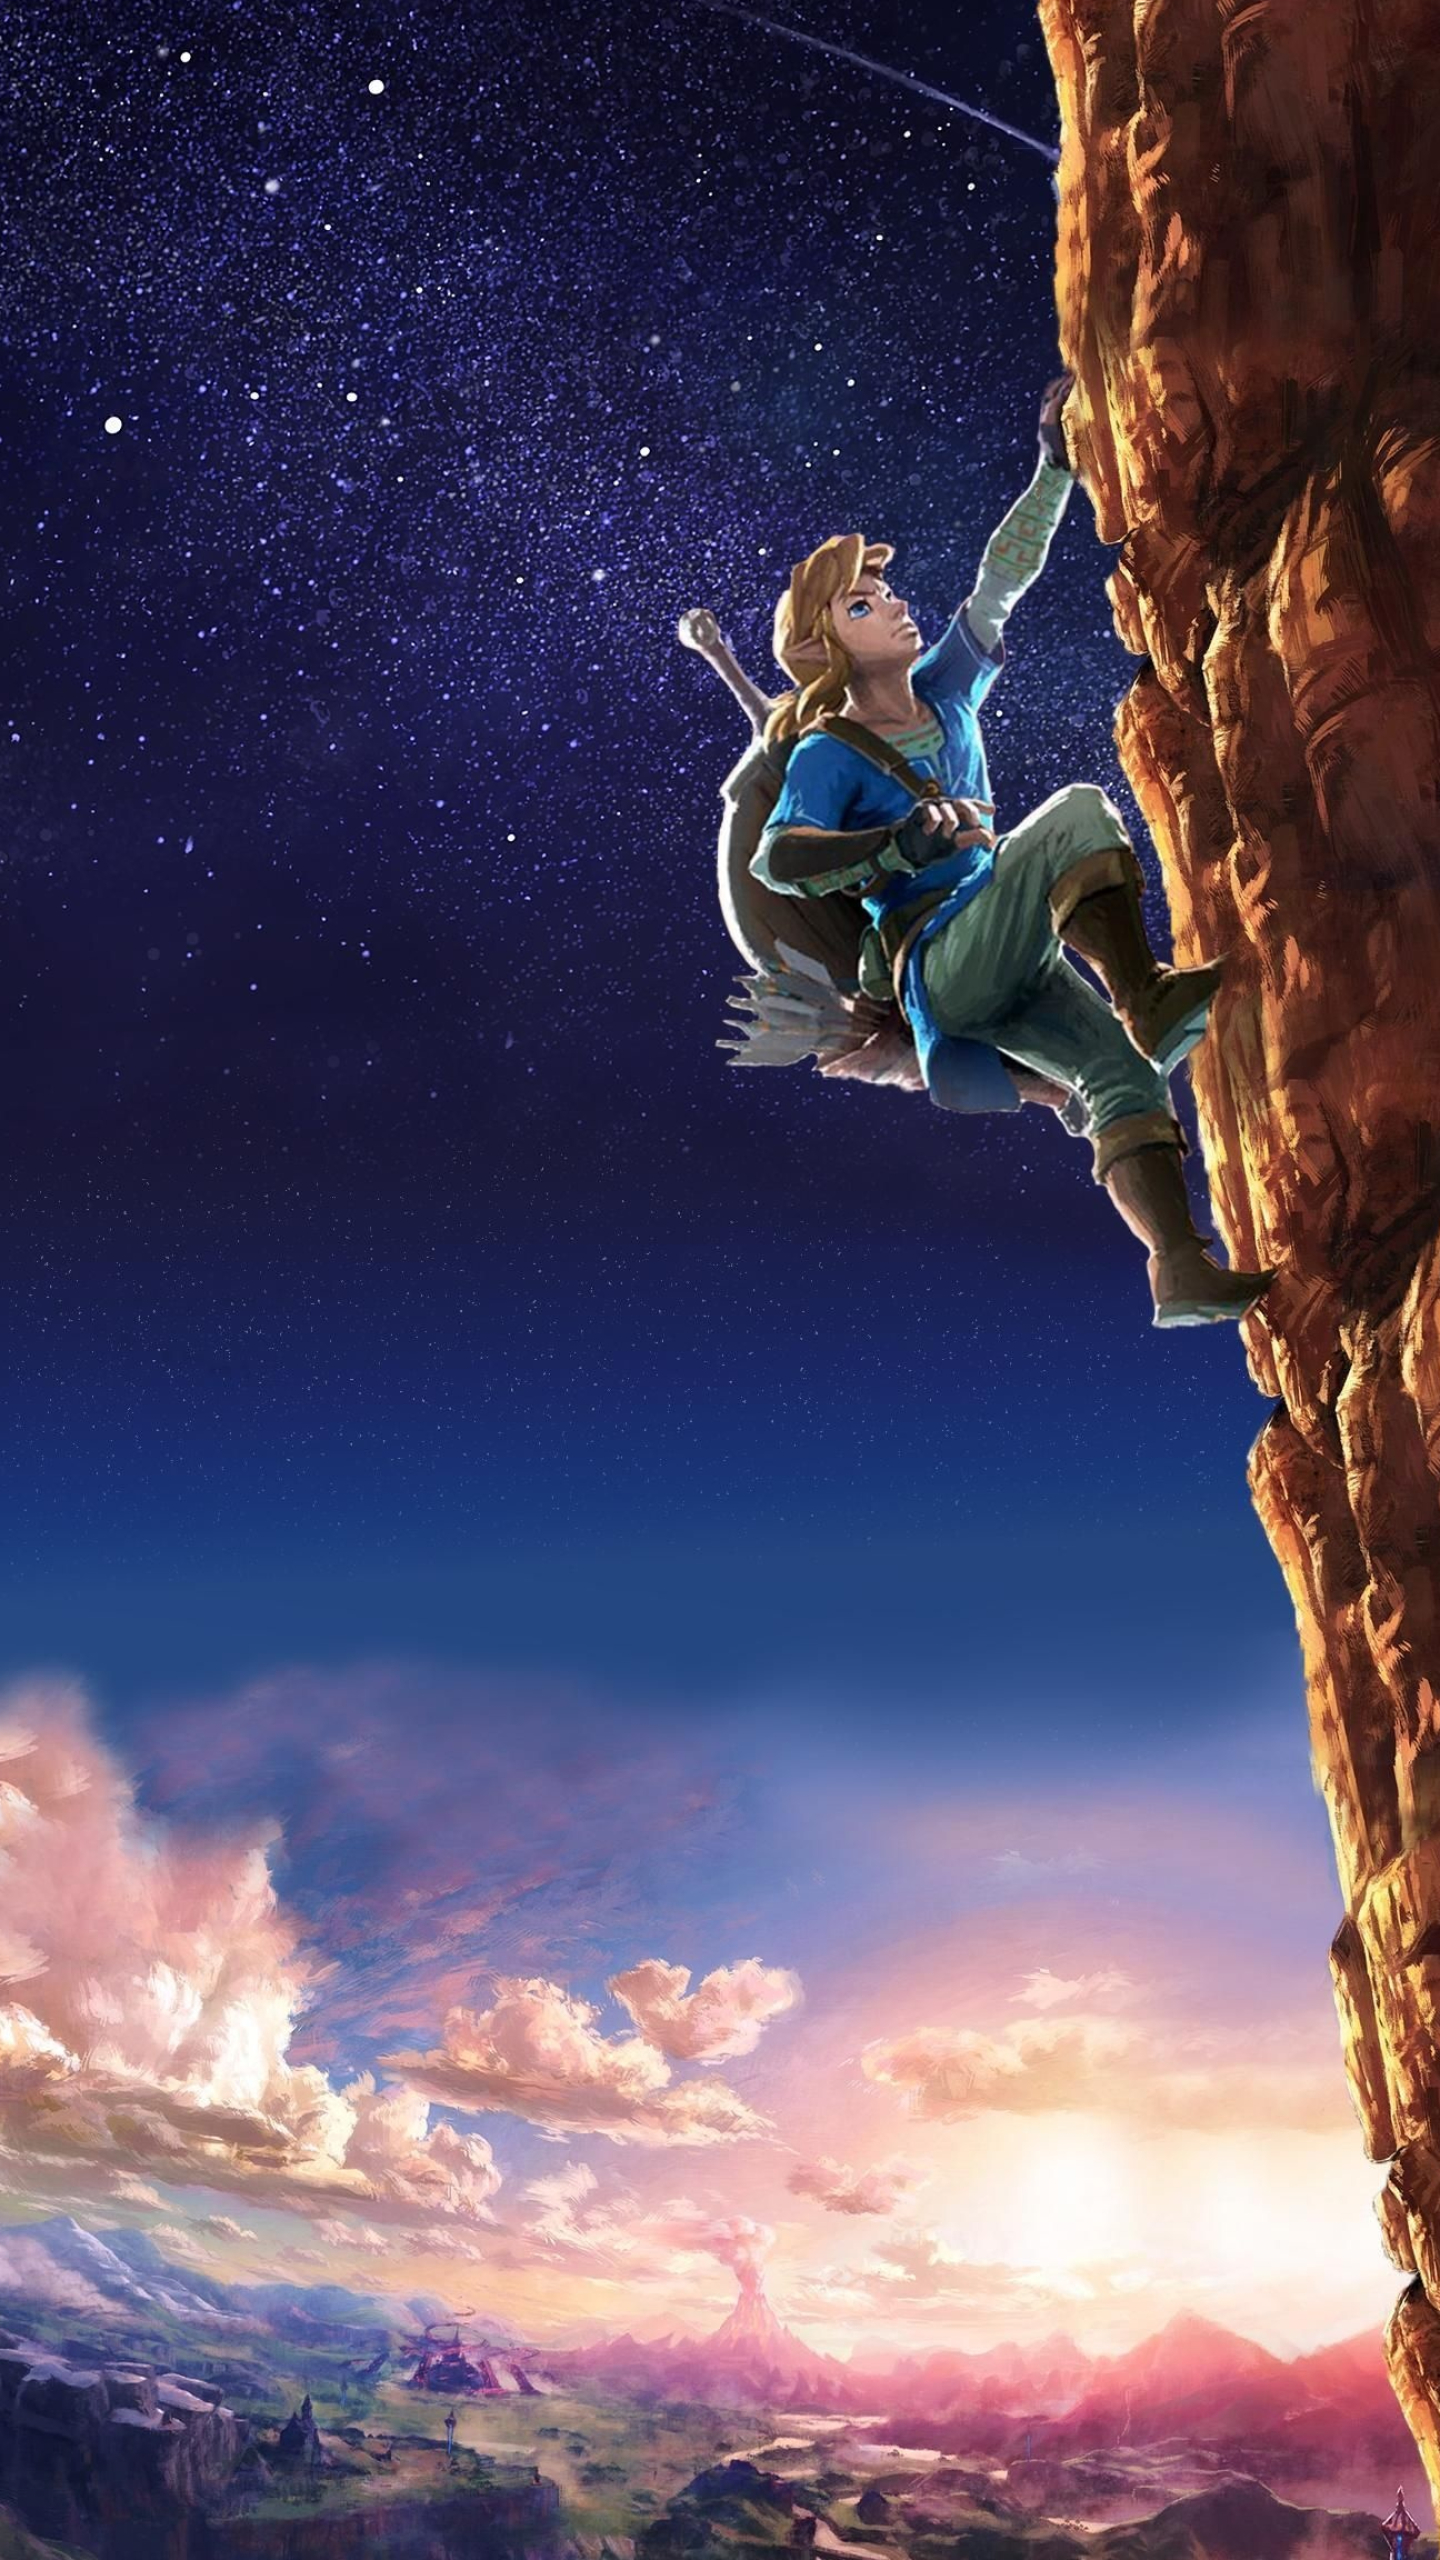 Legend of Zelda Phone Wallpapers - Top Free Legend of Zelda Phone Backgrounds 1440x2560